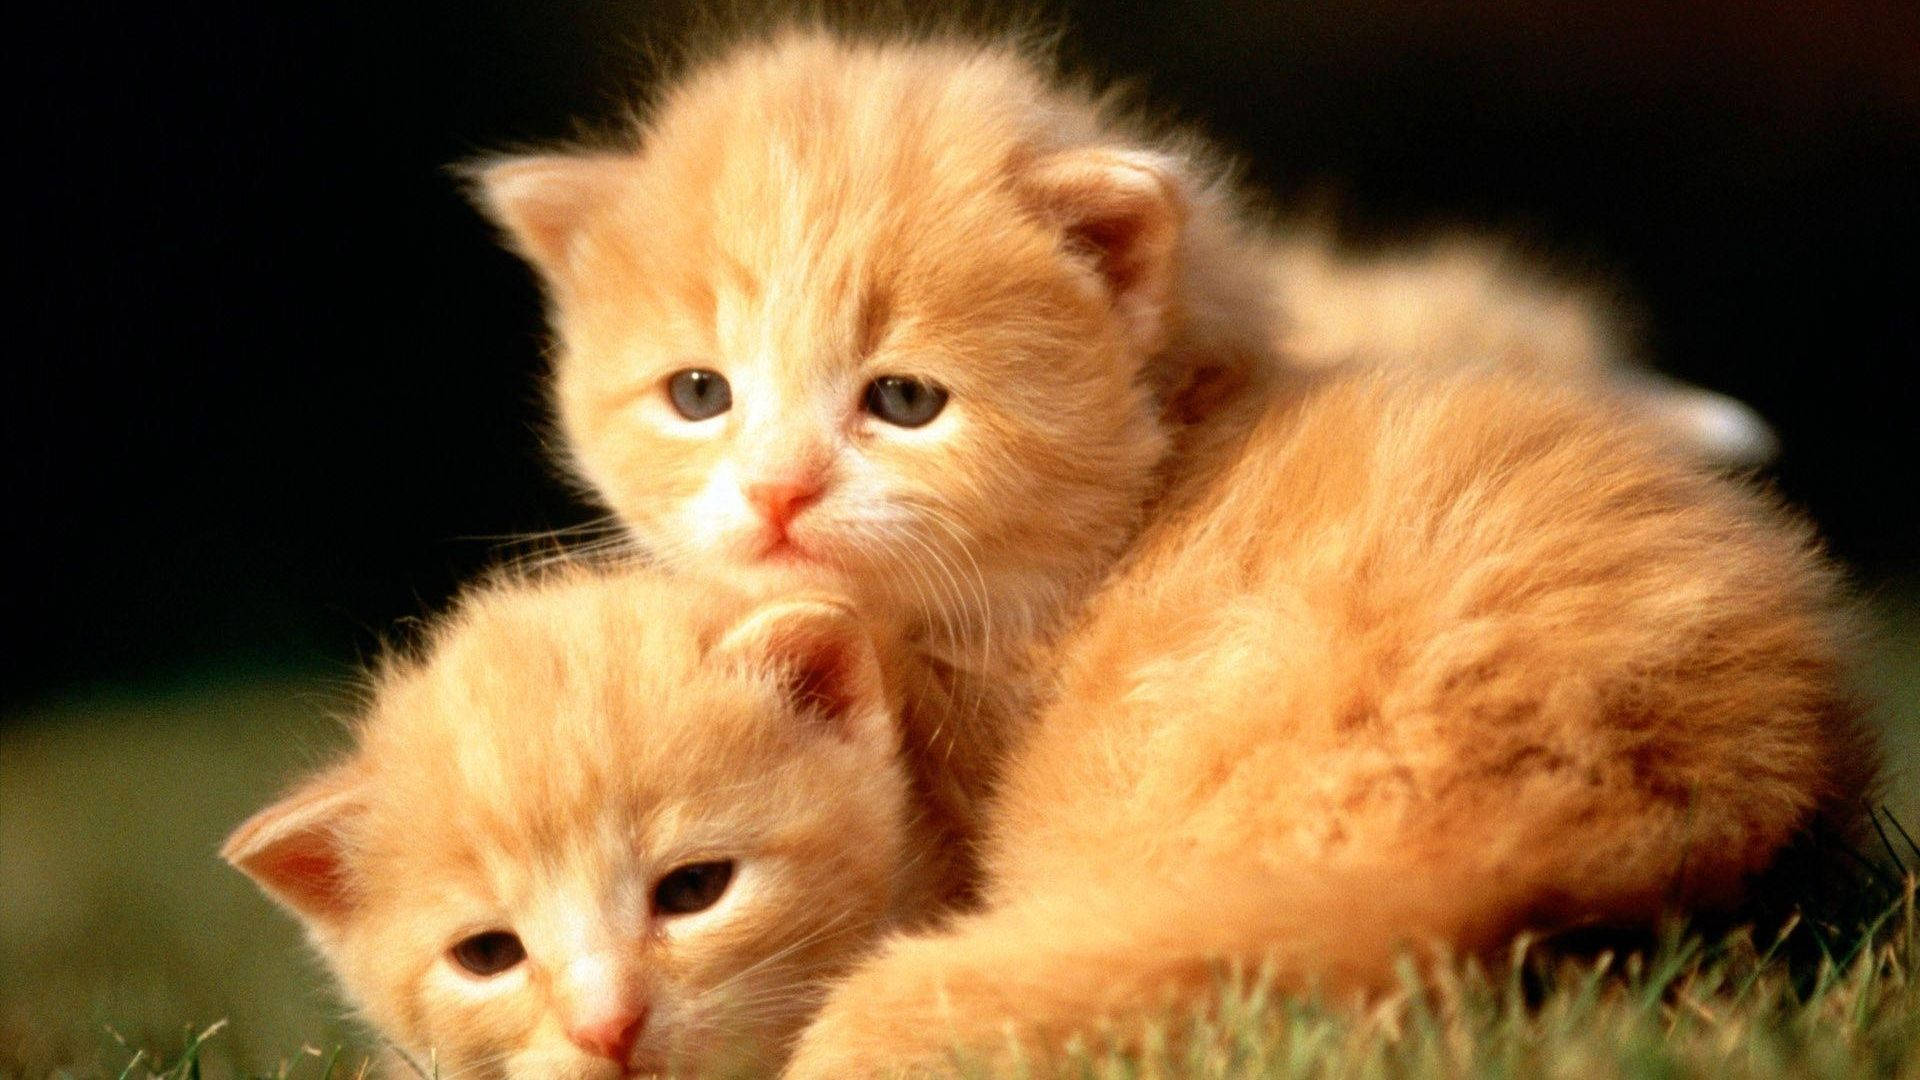 Baby Animal Orange Kittens